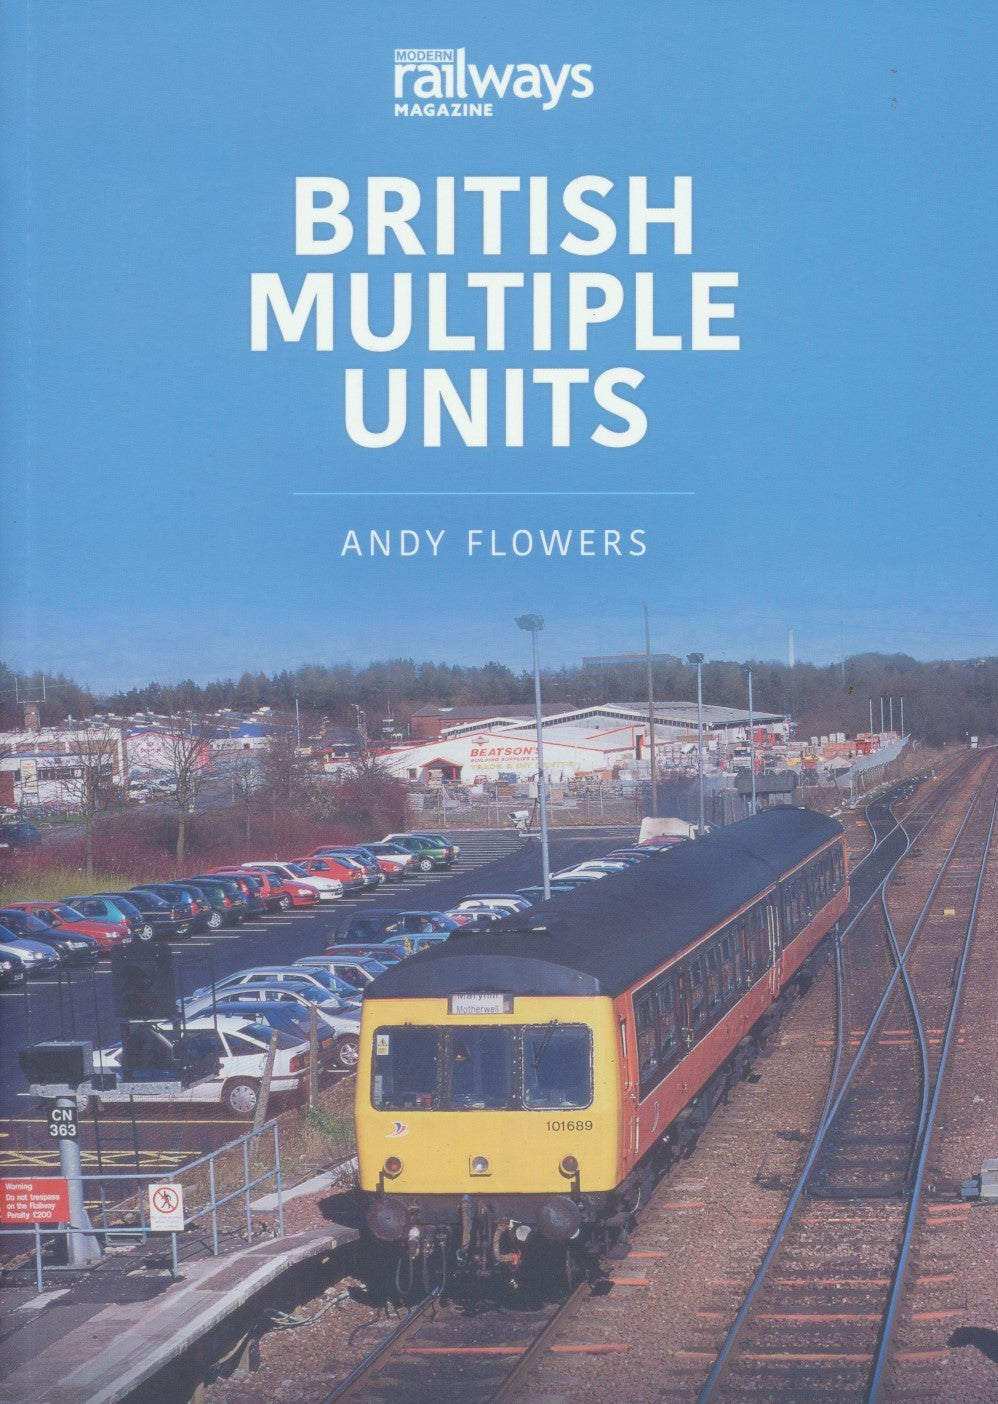 Britain's Railways Series, Volume 13 - British Multiple Units